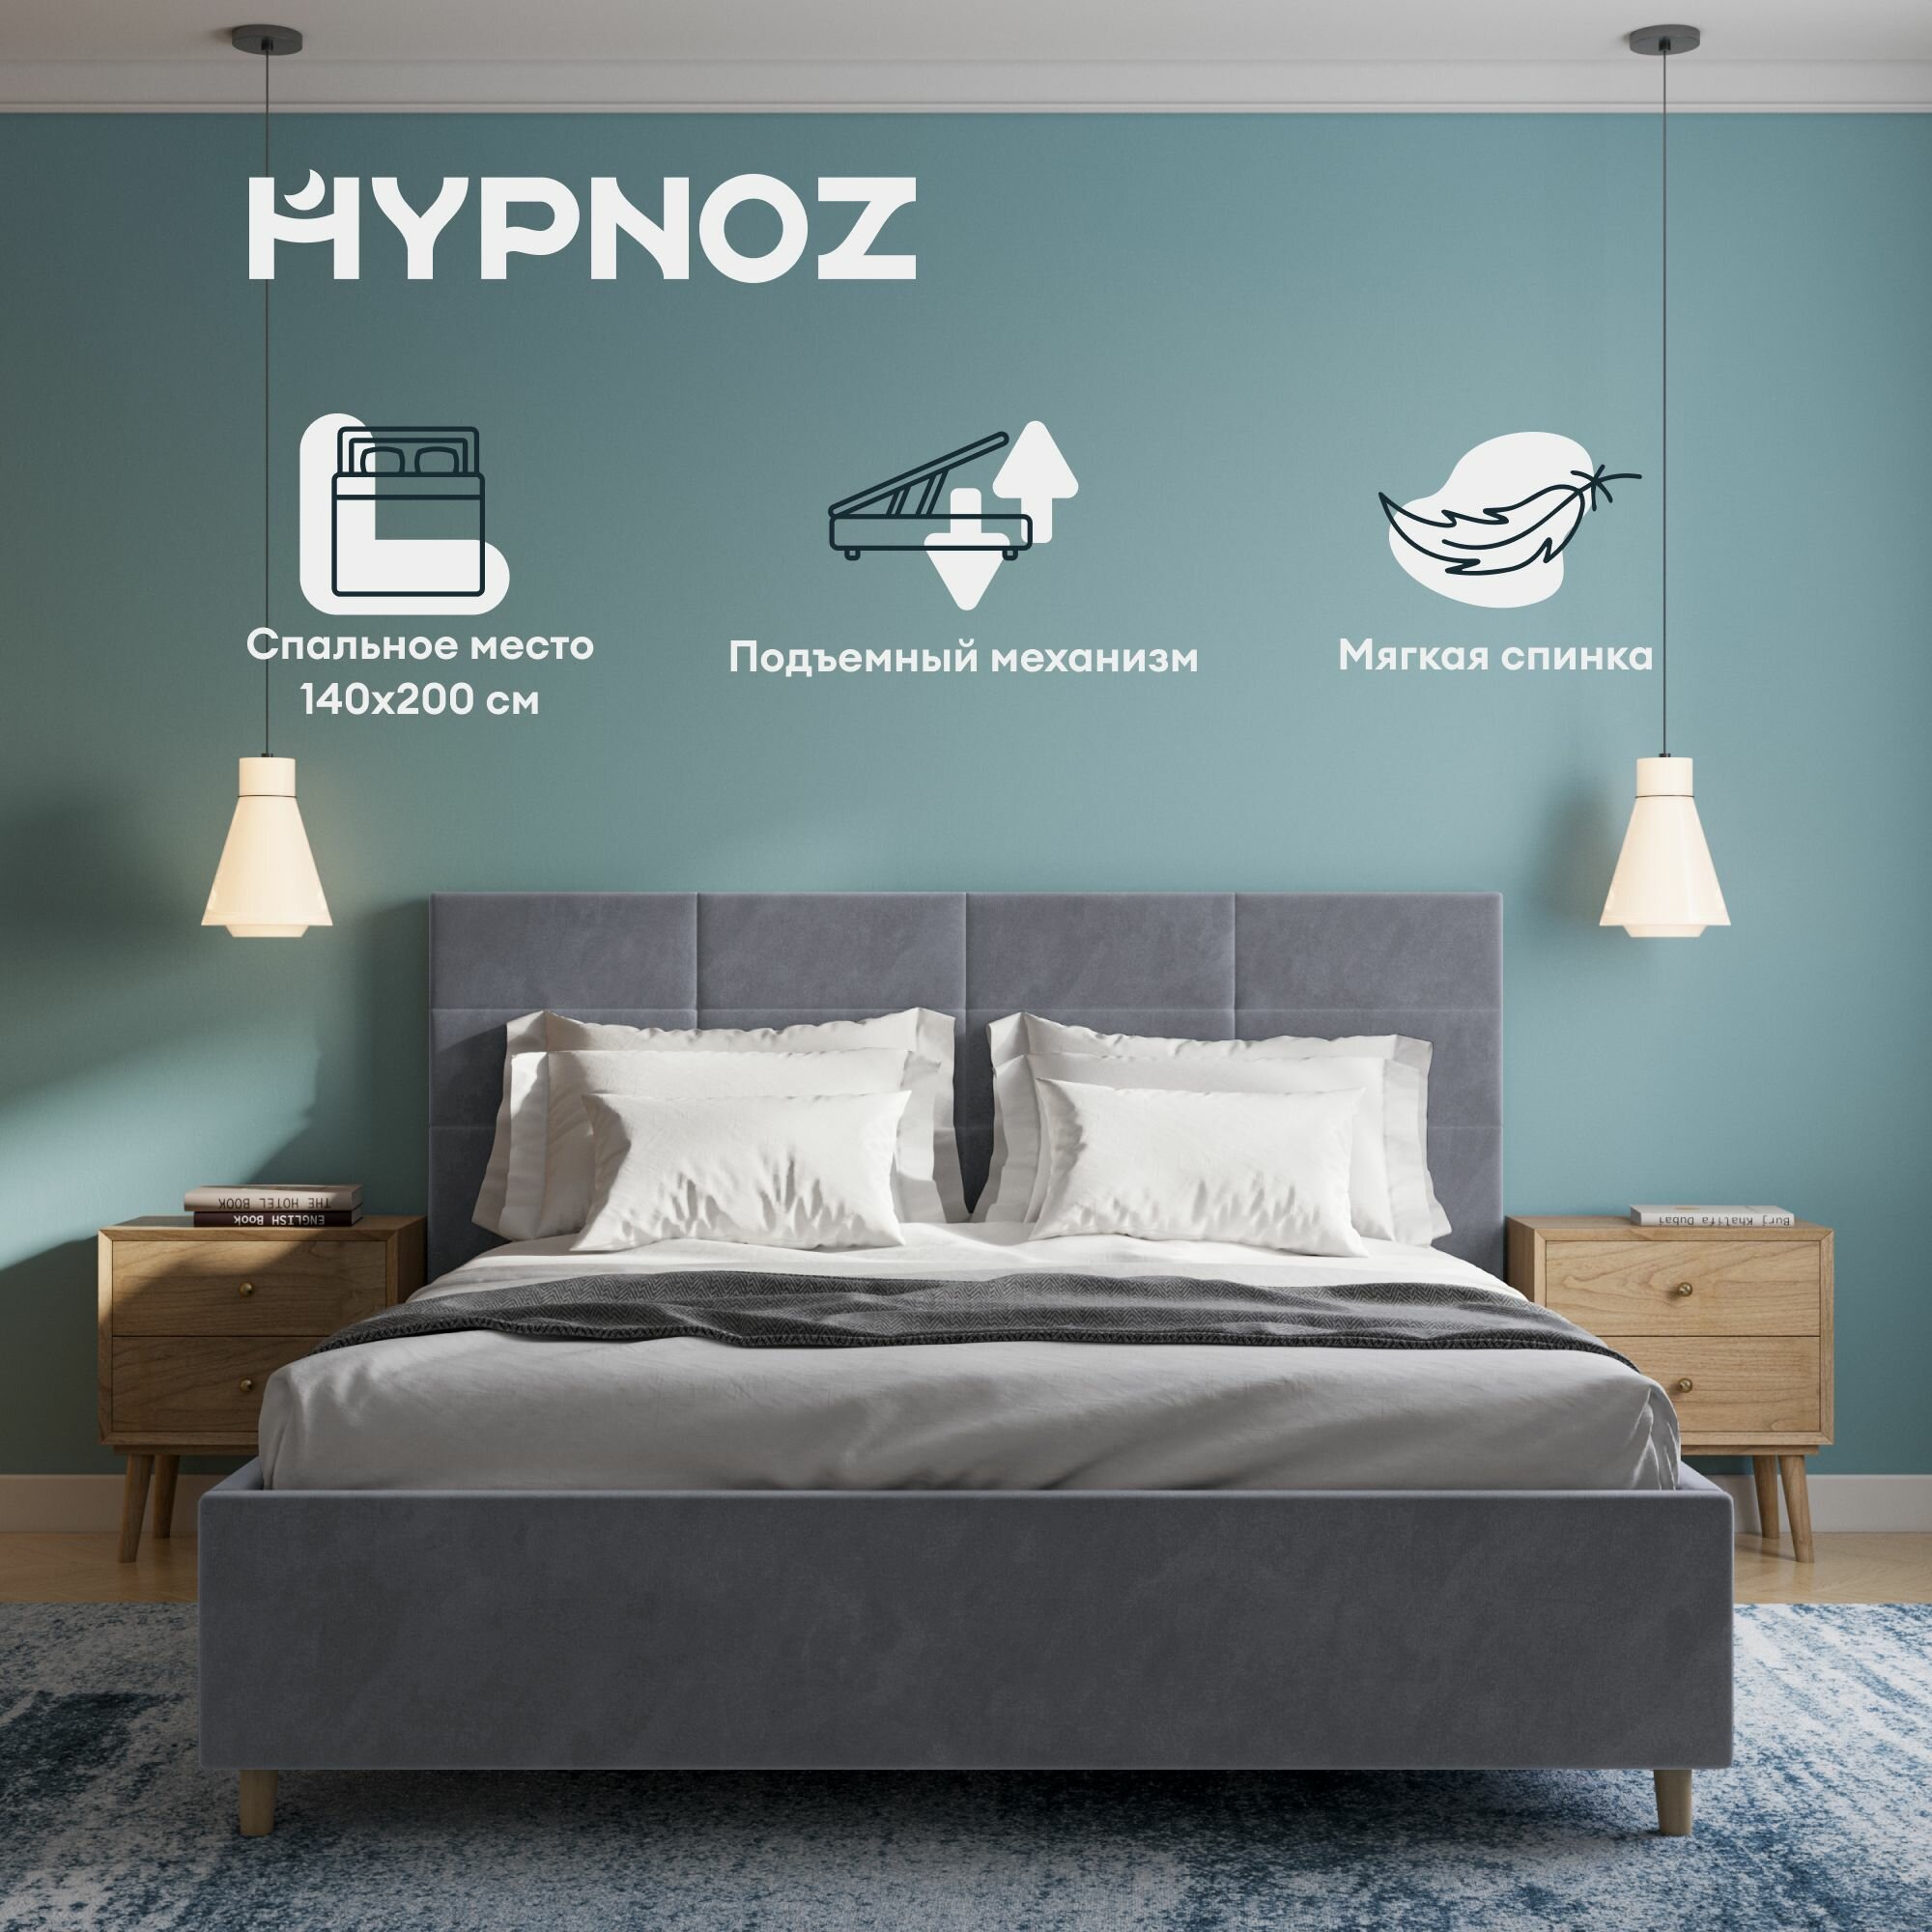 Кровать HYPNOZ Navia 200x140, с подъемным механизмом, Велюр, Темно-серый